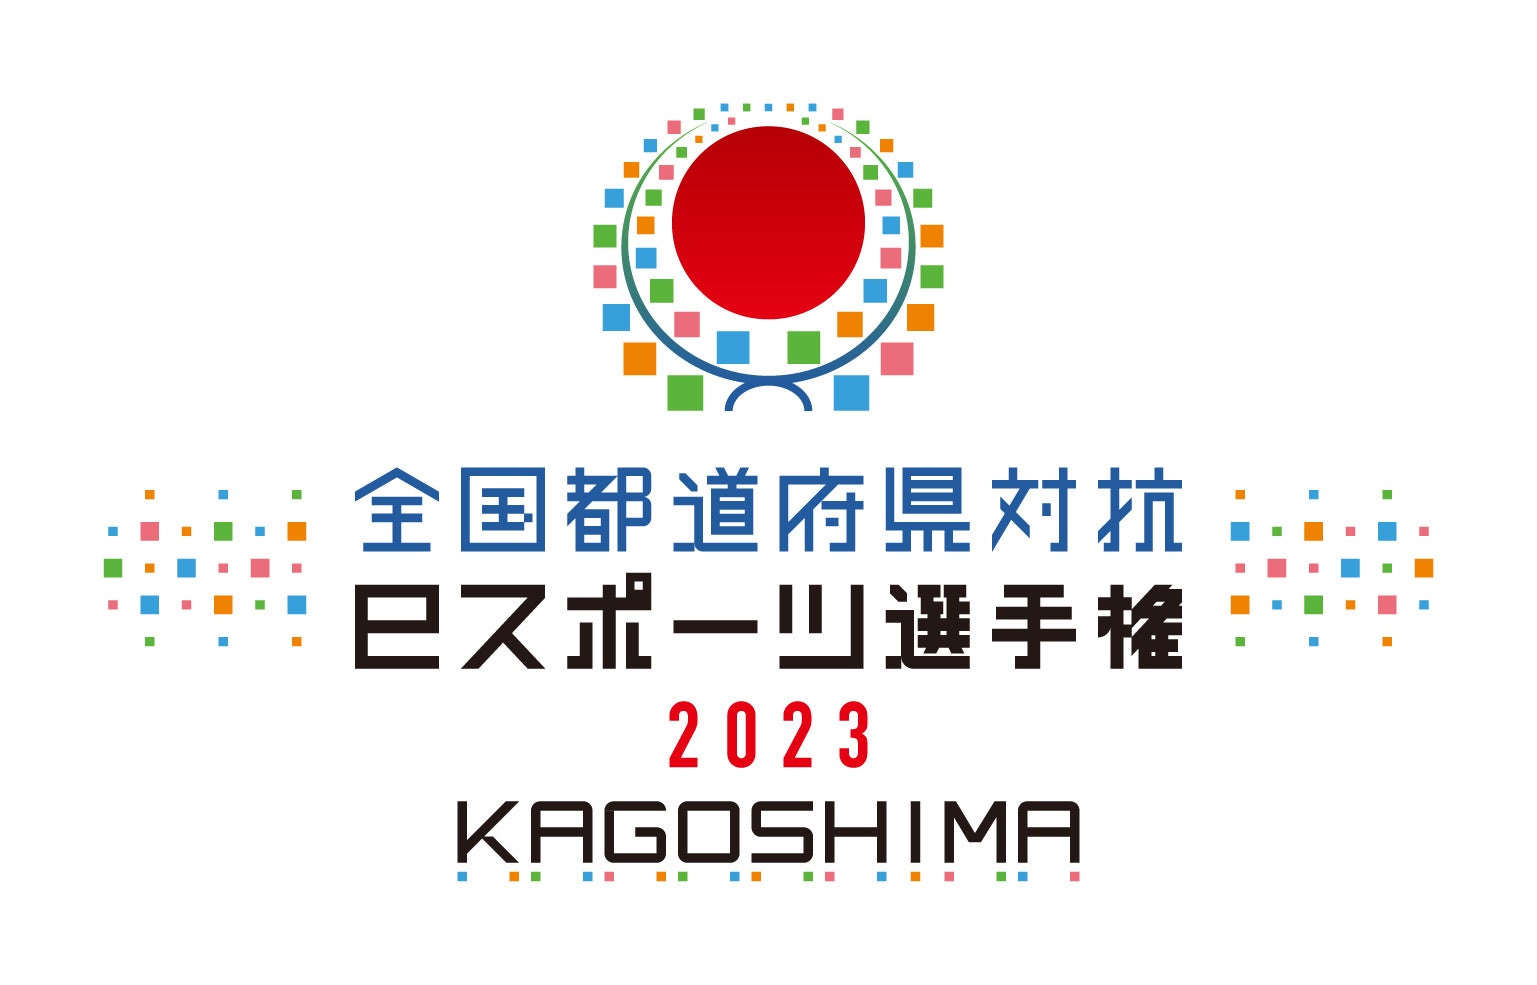 「全国都道府県対抗eスポーツ選手権 2023 KAGOSHIMA」『ぷよぷよeスポーツ』が実施タイトルとして参加決定！